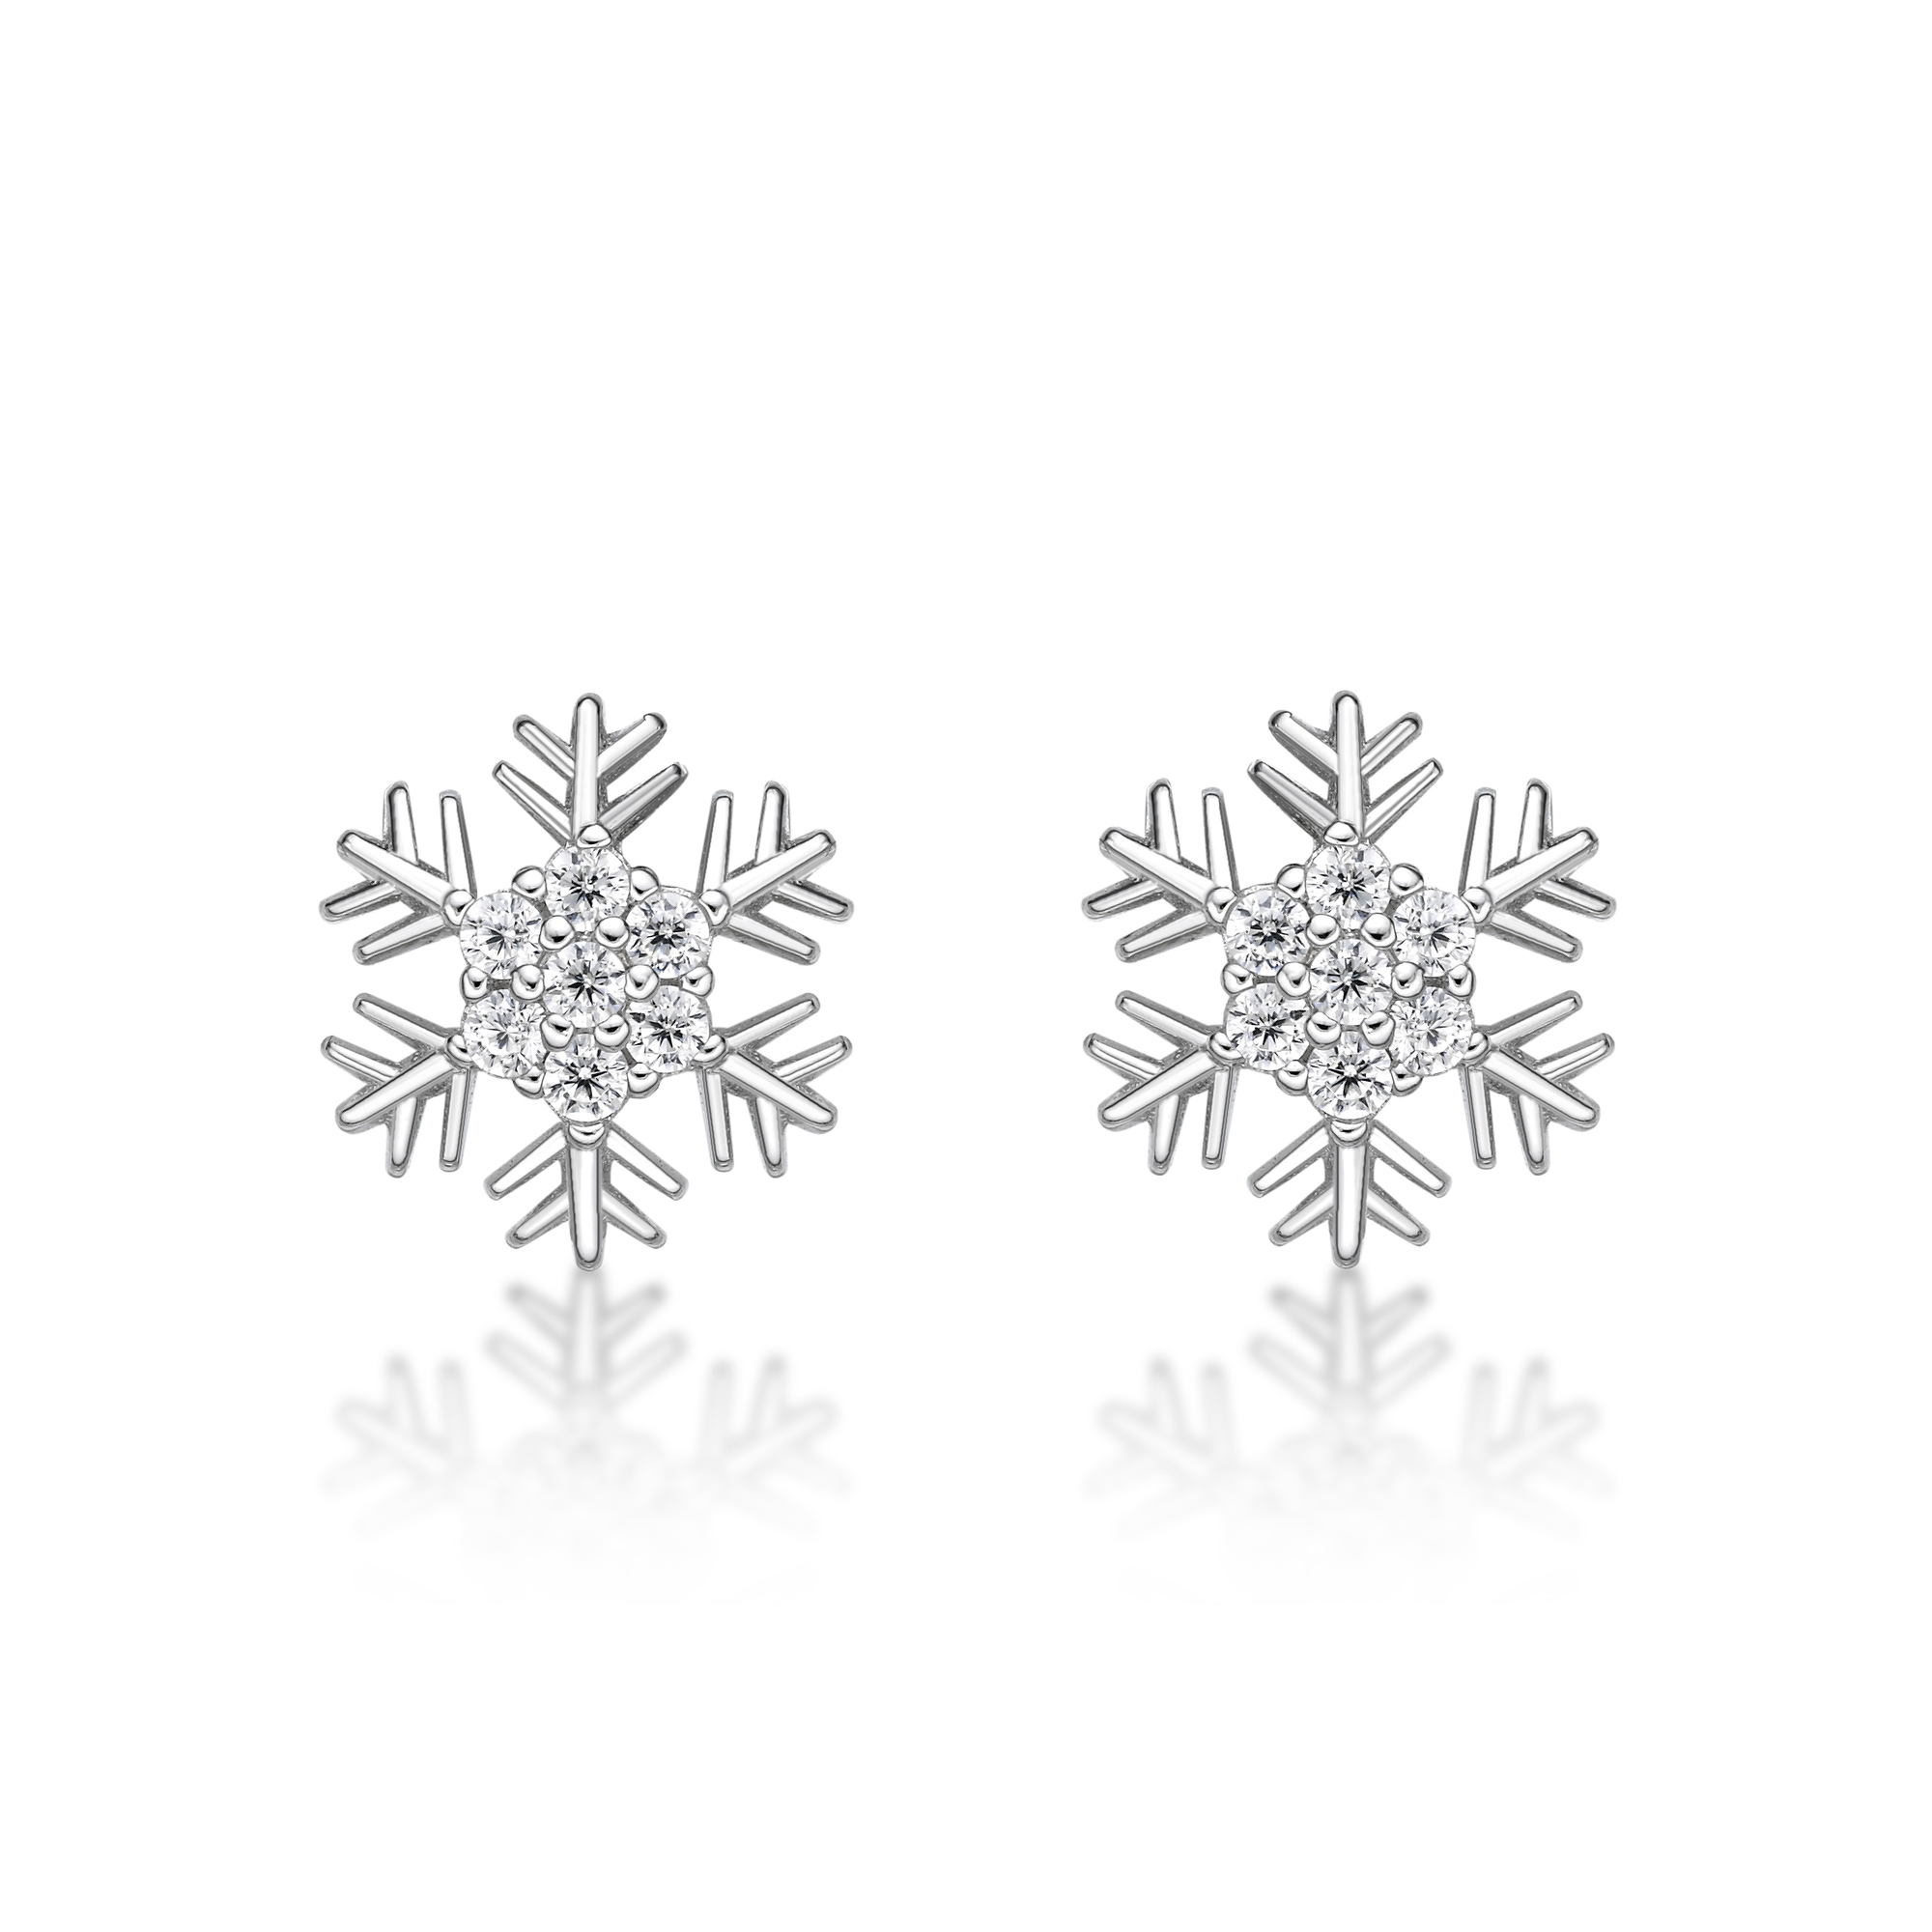 49183-earrings-fashion-jewelry-sterling-silver-49183-5.jpg